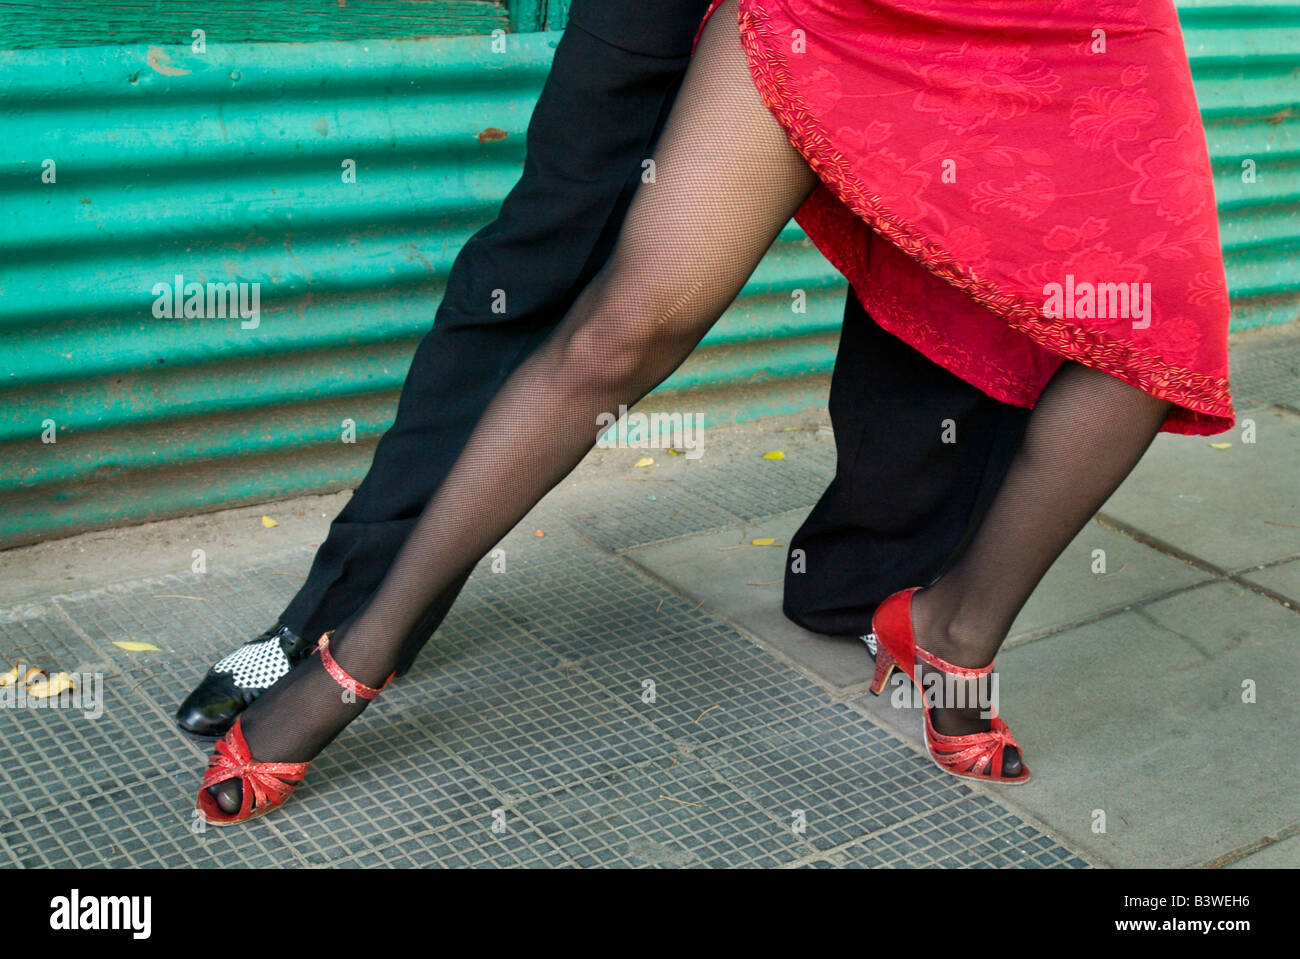 L'Amérique du Sud, Argentine, Buenos Aires, La Boca. Position de couple montre leurs jambes dans un tango classique. (MR) Banque D'Images